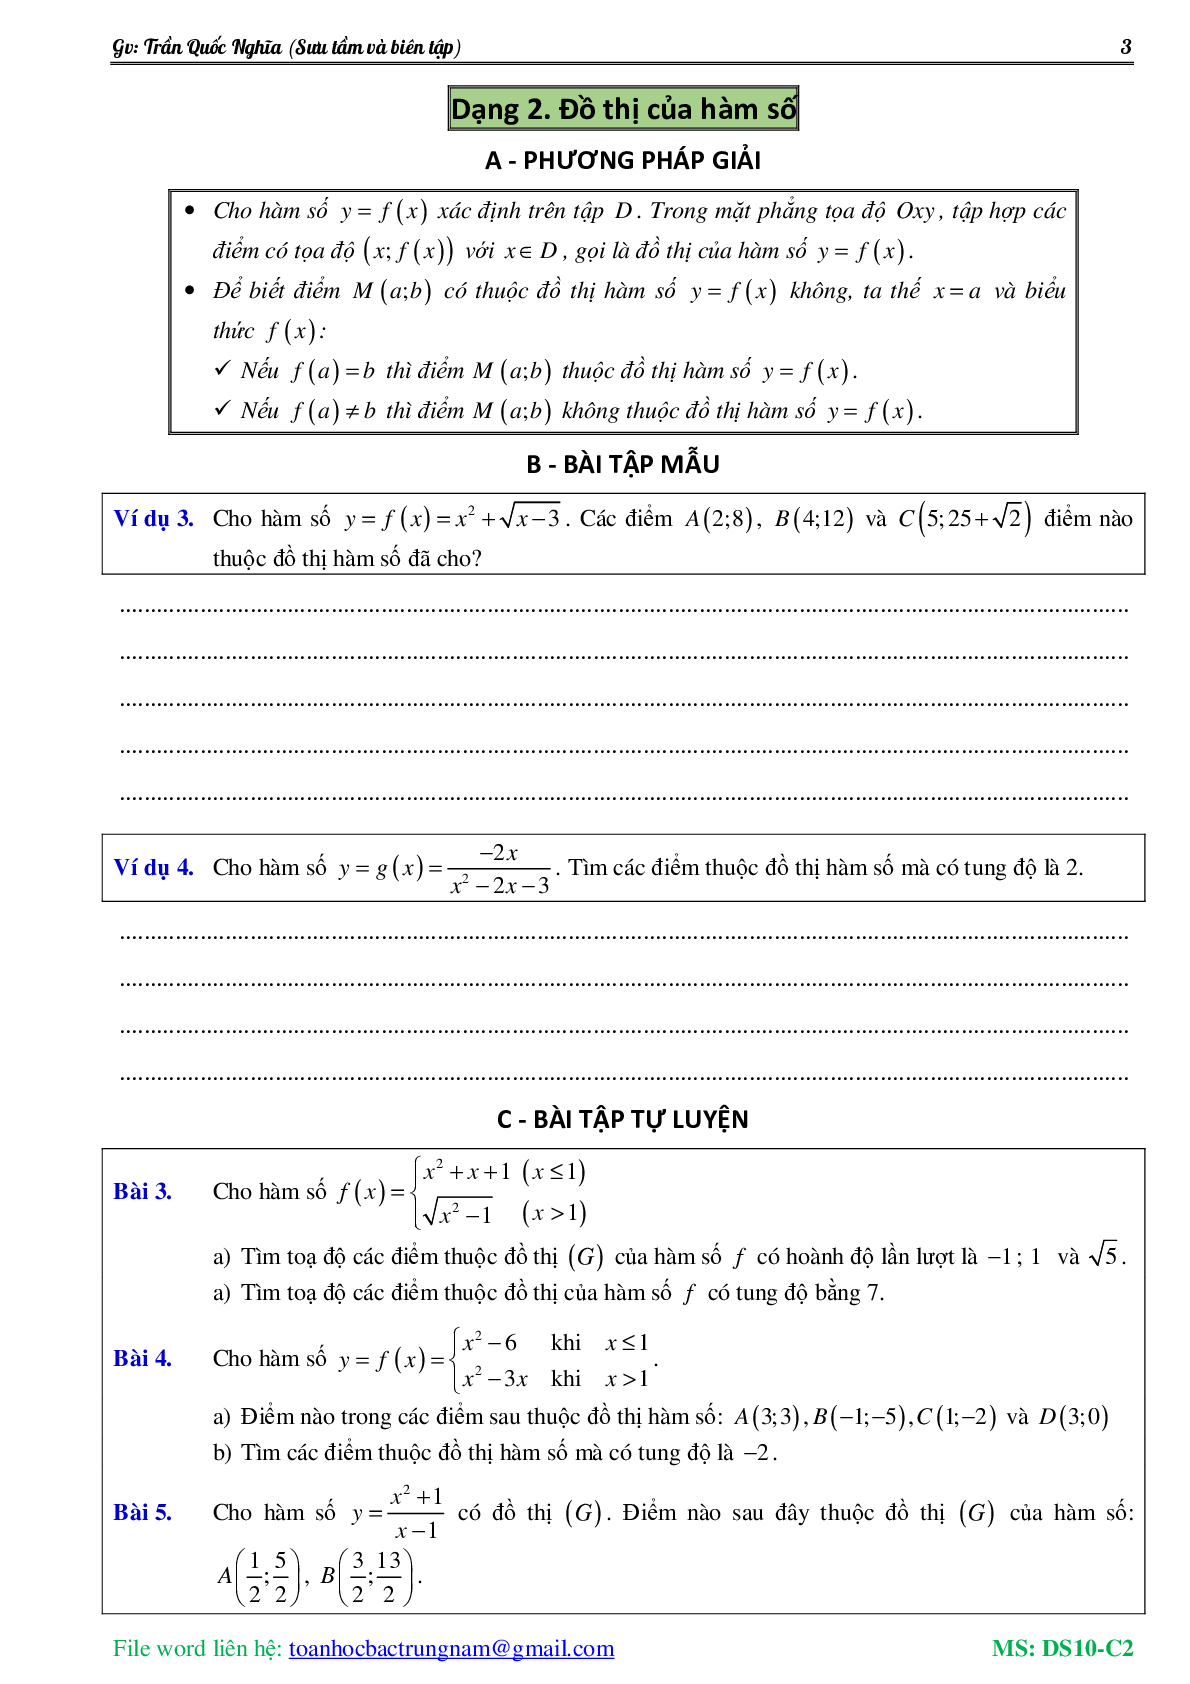 Chuyên đề về hàm số bậc nhất và hàm số bậc hai (trang 4)